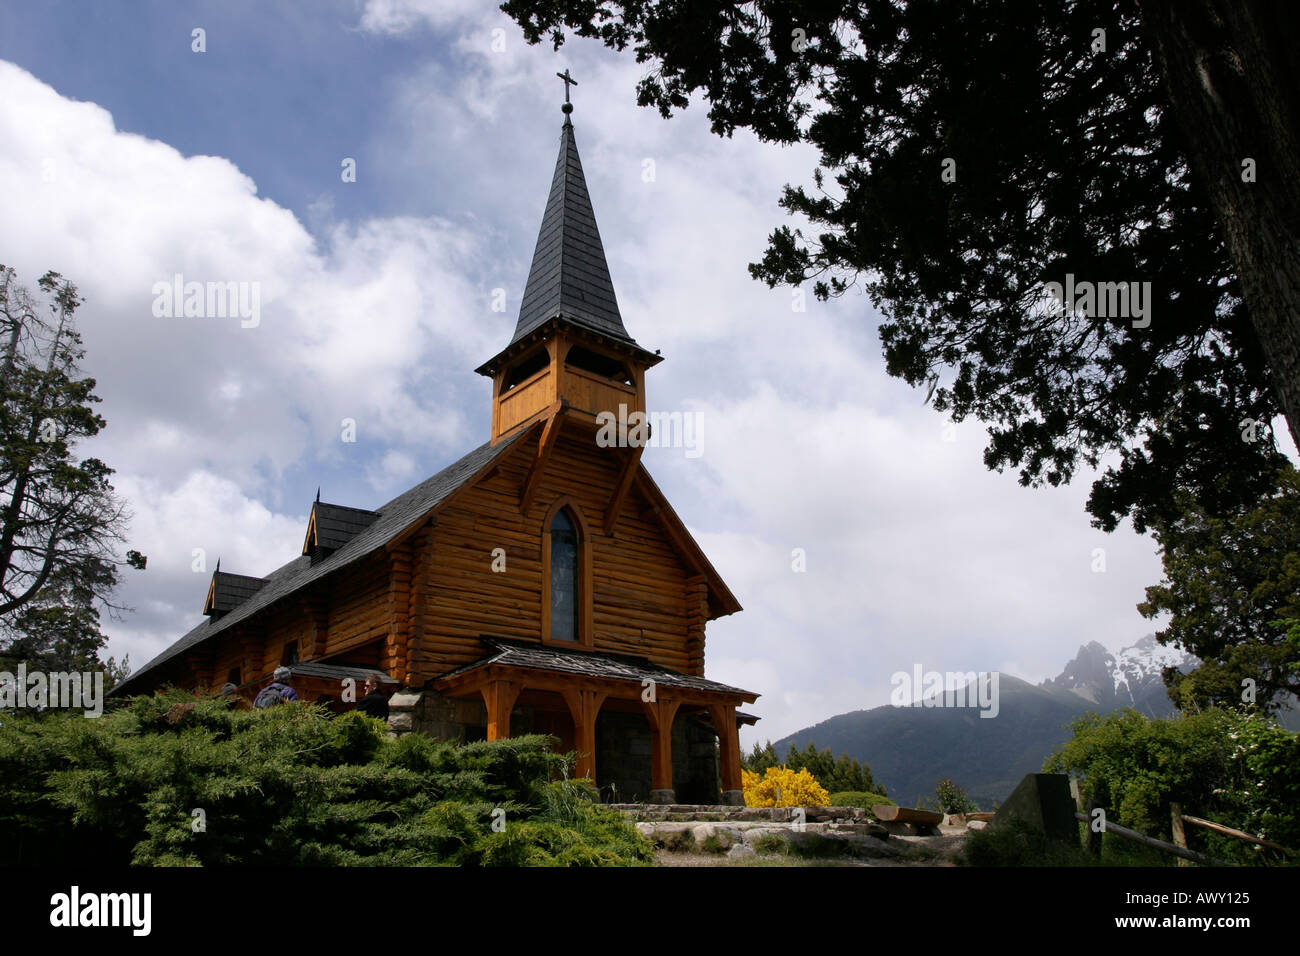 Capilla Nuestra Señora de la Asunción, a wooden church near Bariloche, Argentina Stock Photo